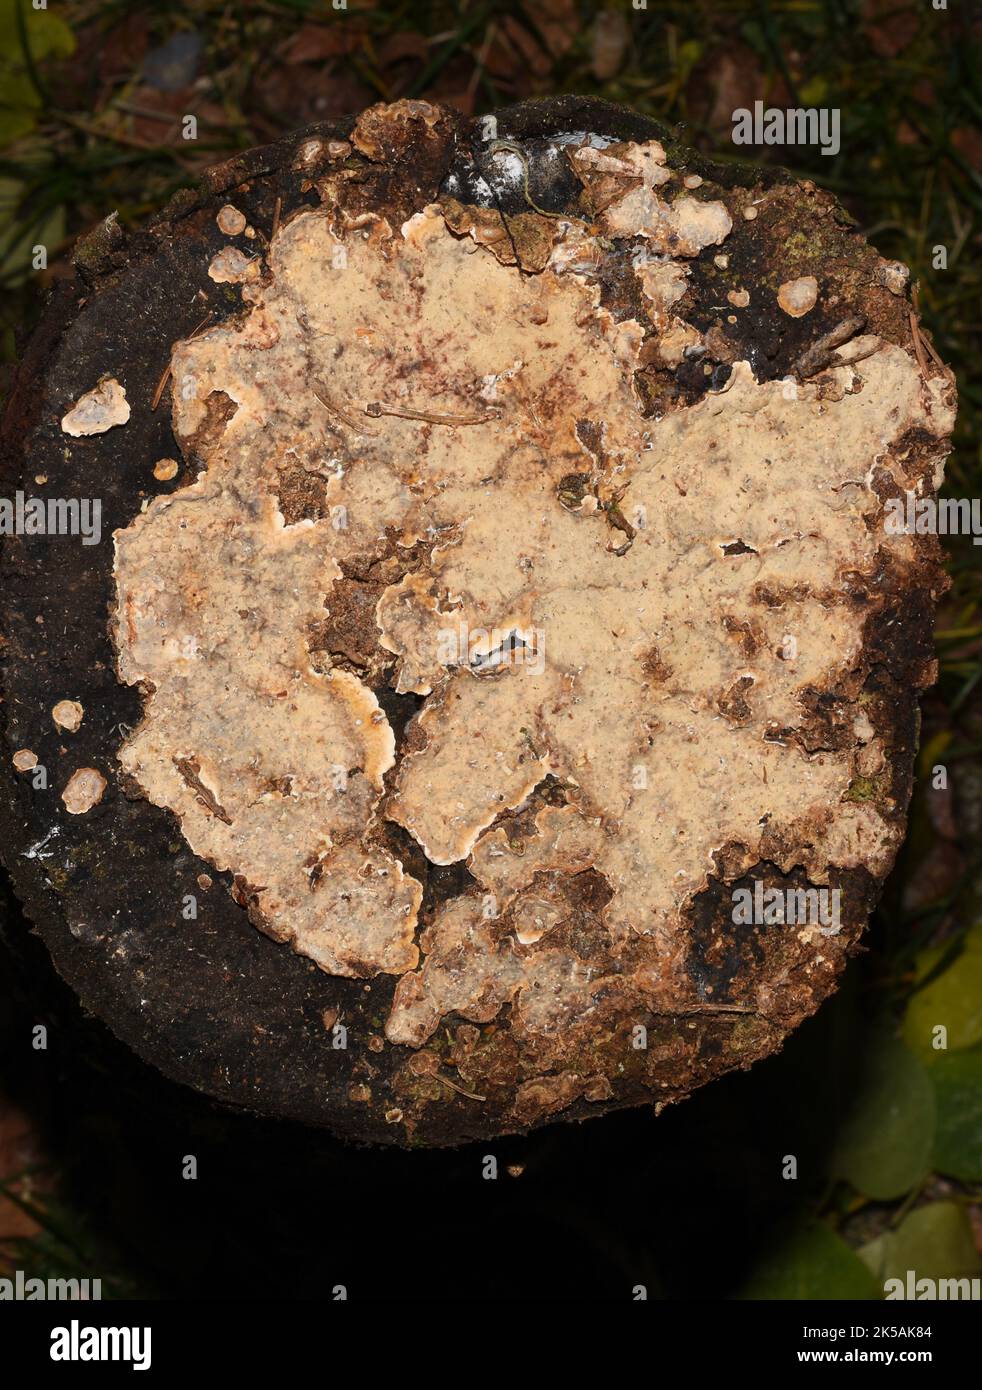 Blutende Laubkruste Stereum rugosum Pilz wächst auf einem Baumstumpf Stockfoto